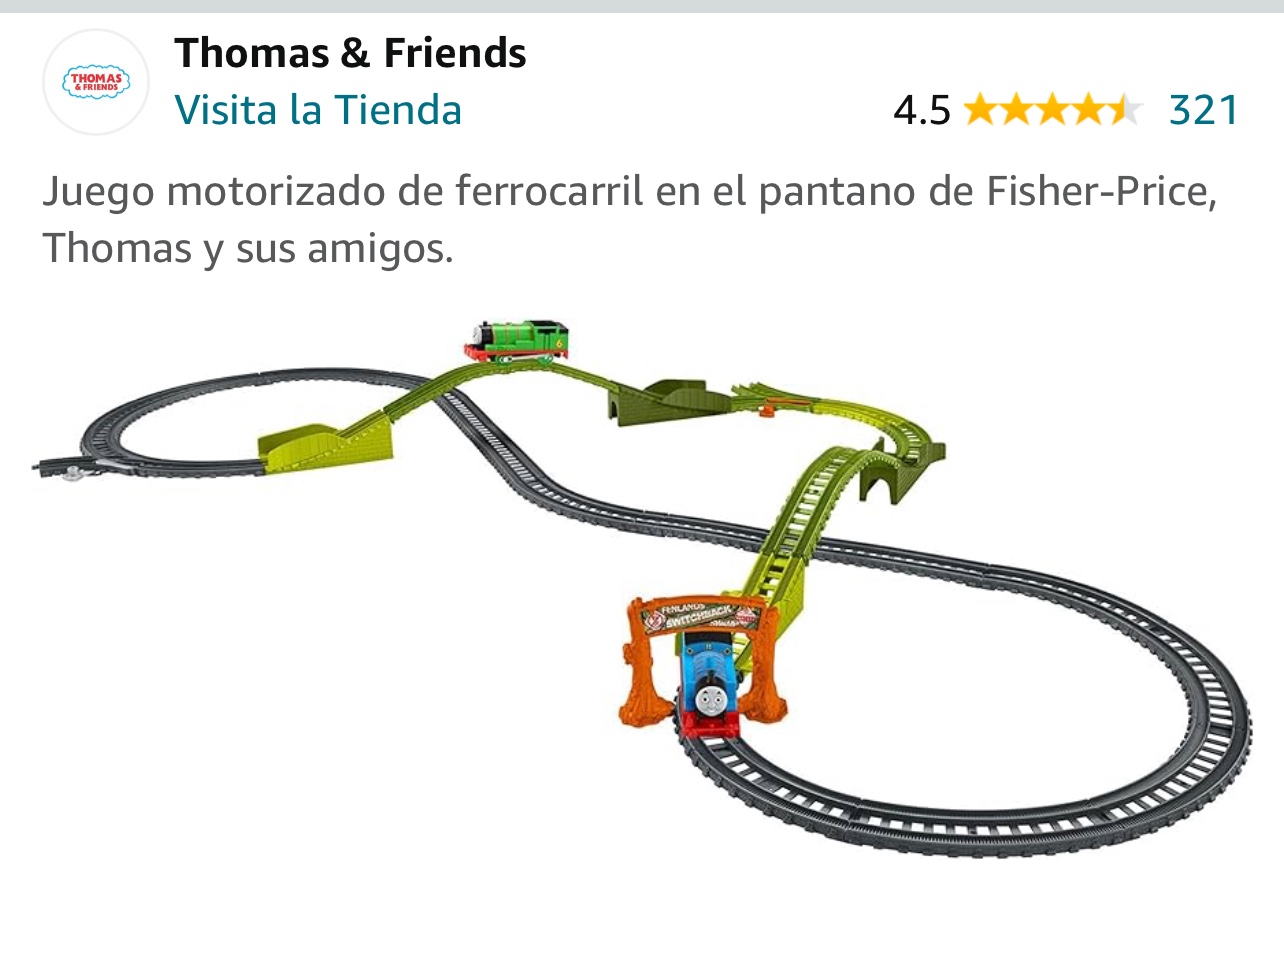 juguetes - Juego motorizado de ferrocarril en el pantano de Fisher-Price.